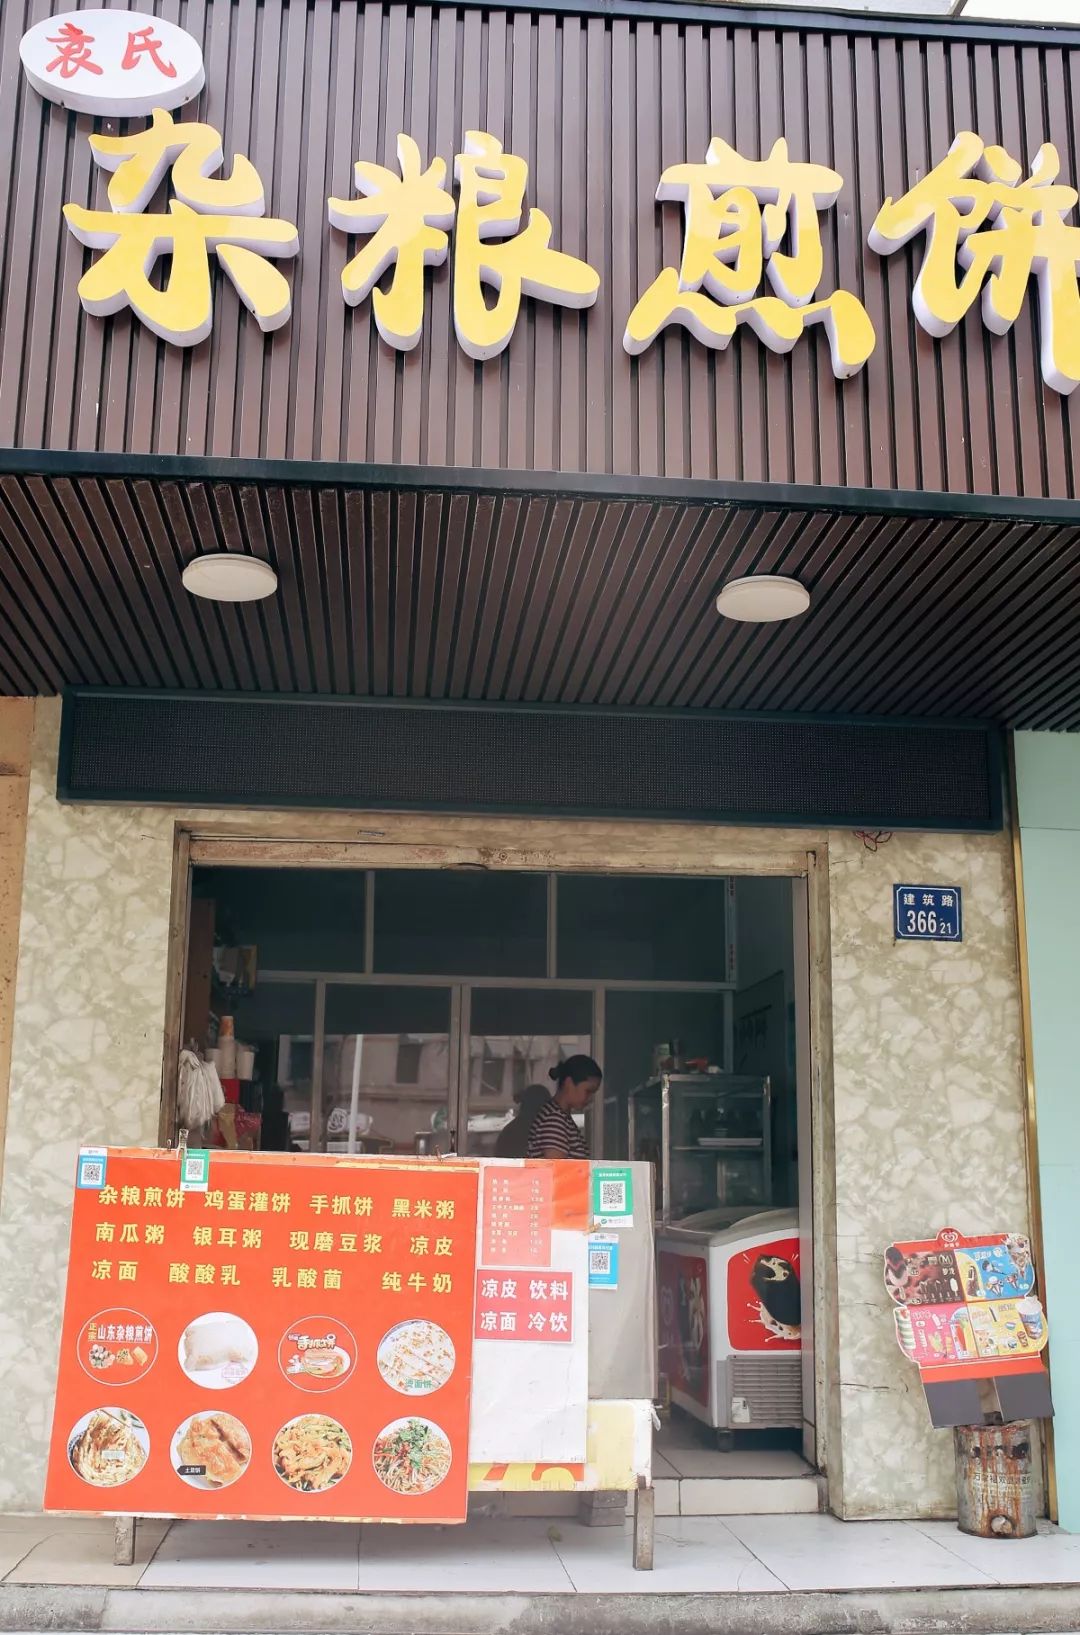 大统华边上这家杂粮煎饼店无锡人买了十多年了